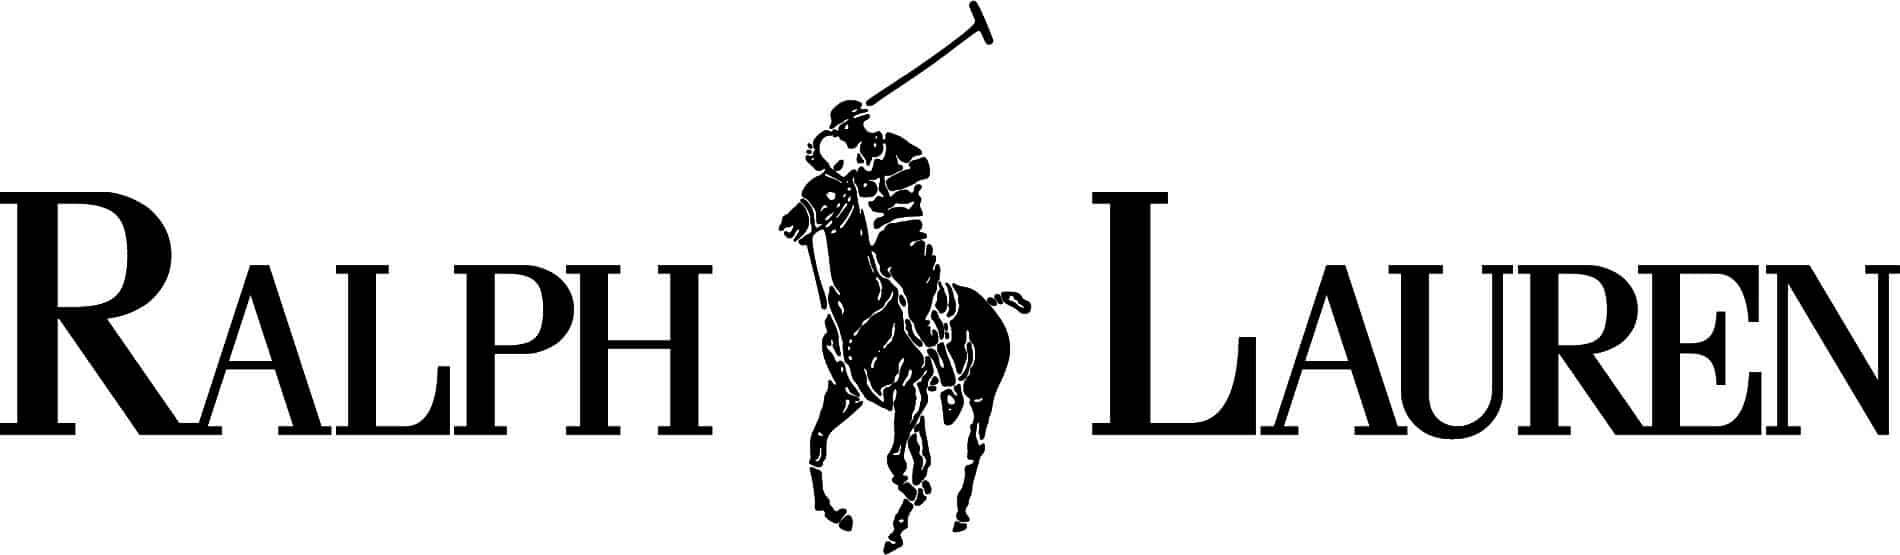 polo-ralph-lauren-logo-vector-fclkrjsm